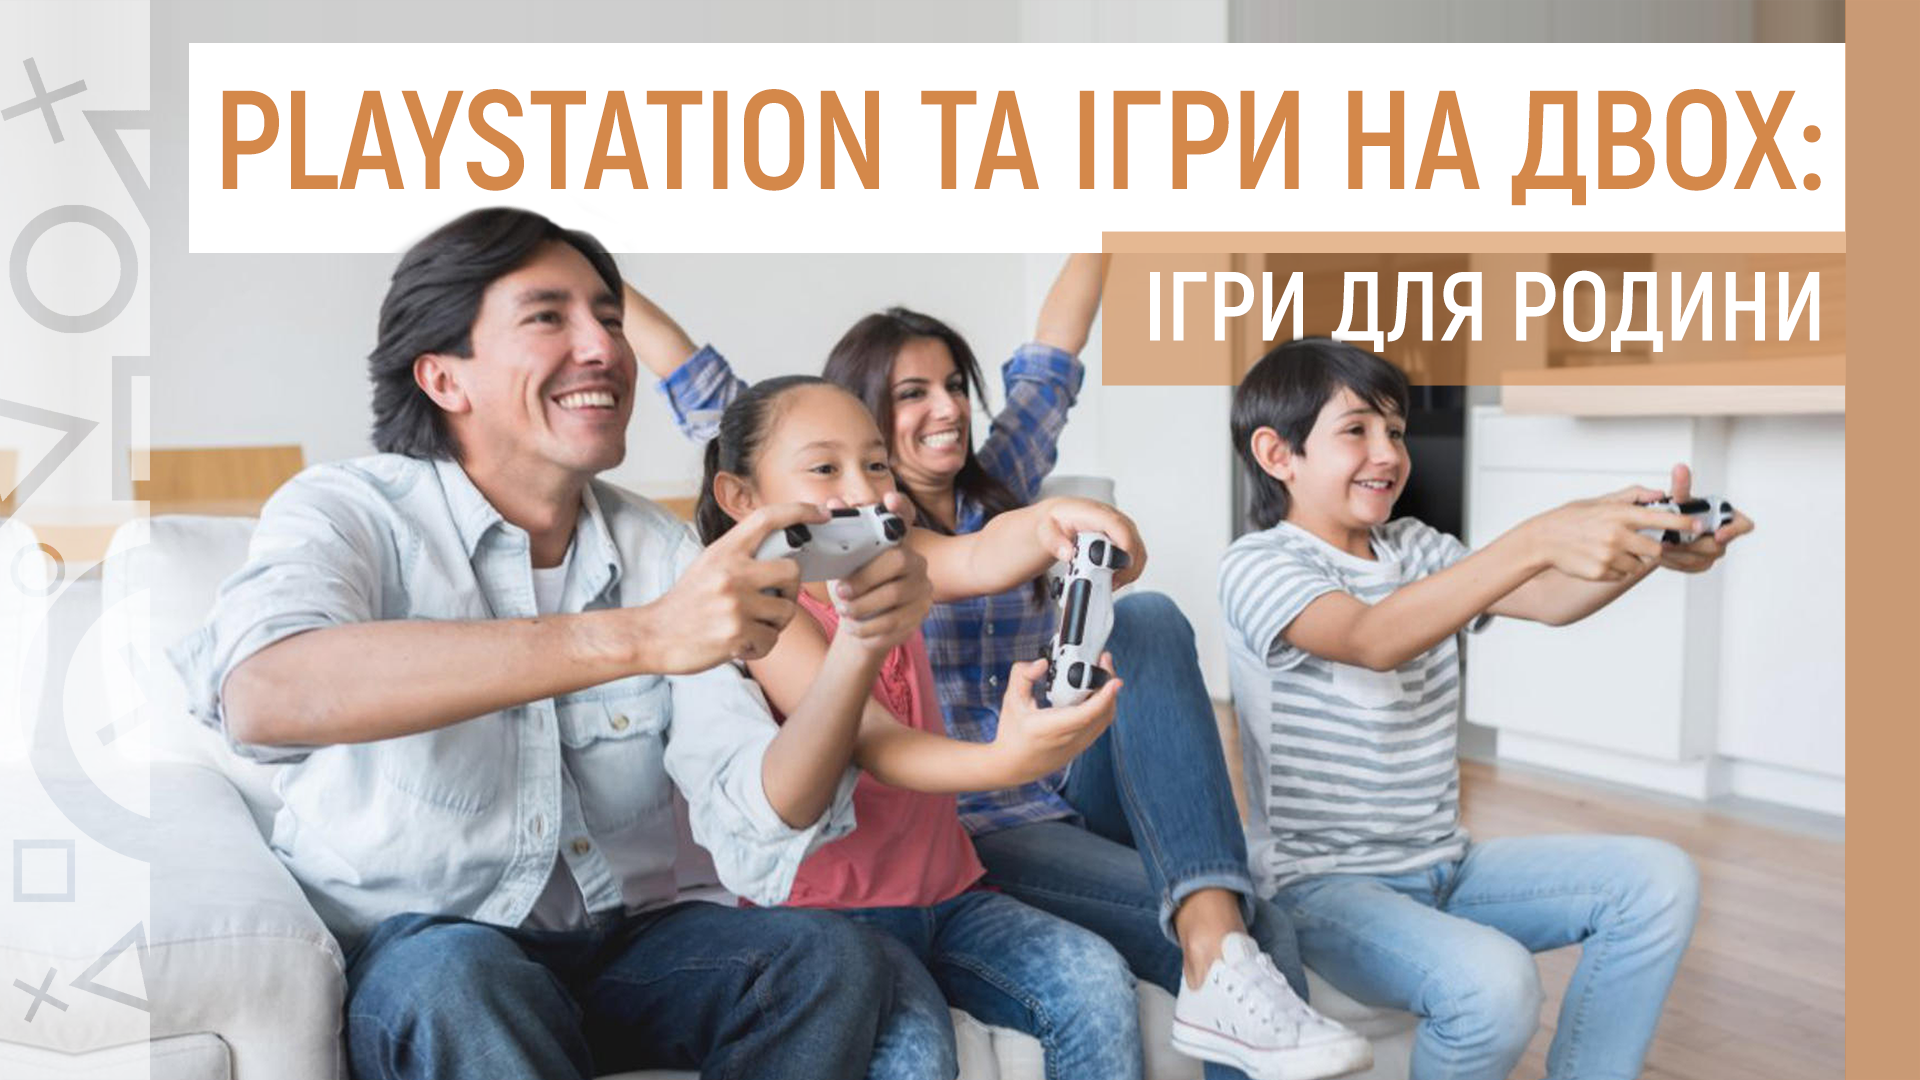 🎮 Playstation та ігри на двох: ігри для родини 